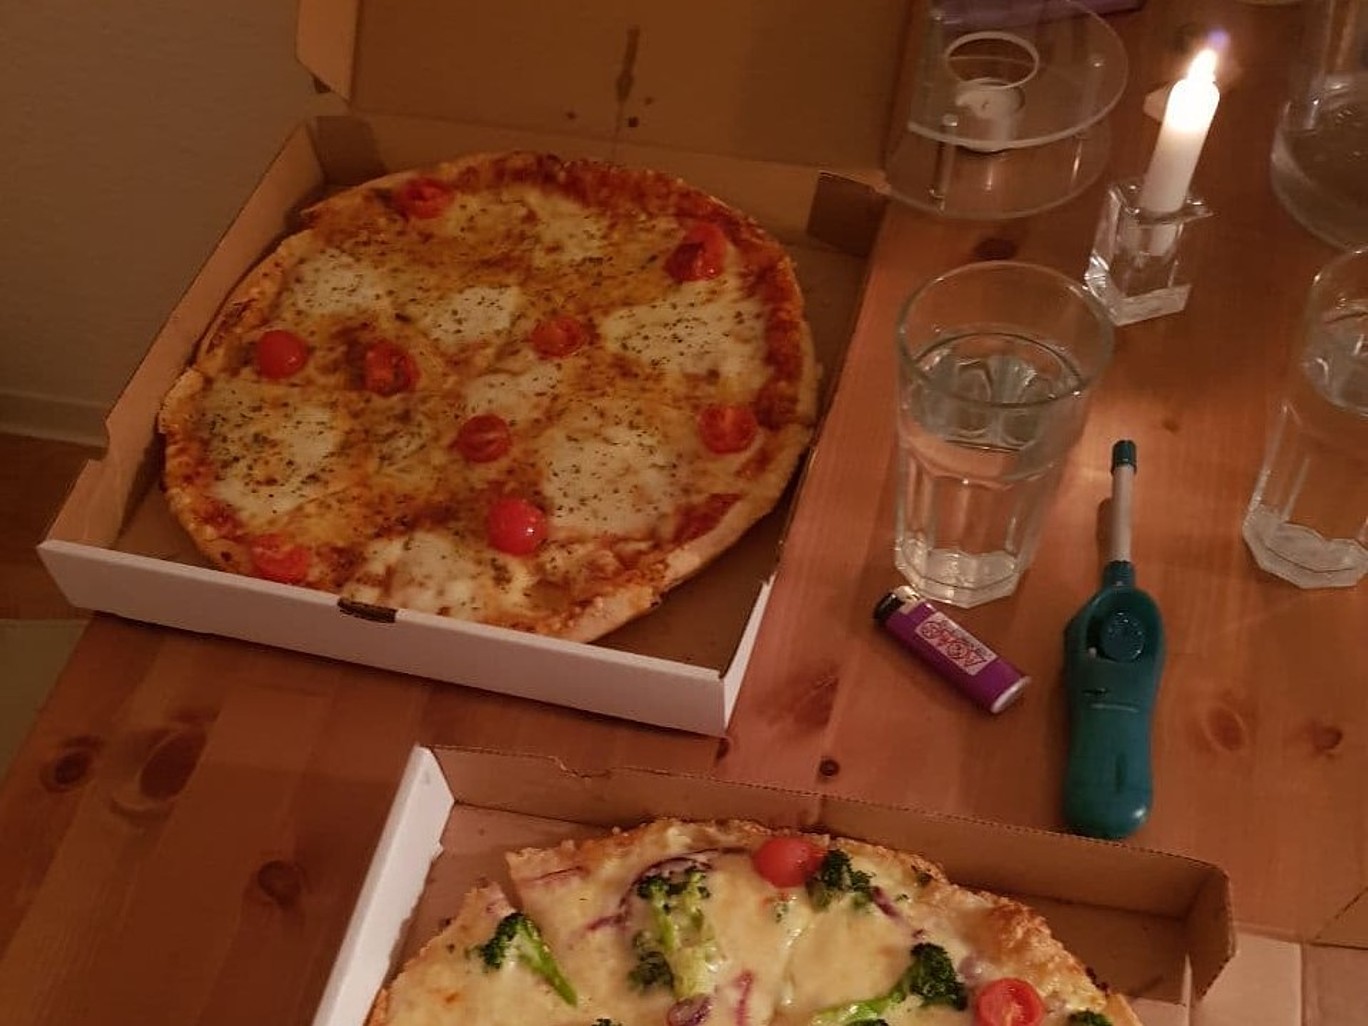 Tisch mit Pizzen und Gläsern und einer brennenden Kerze